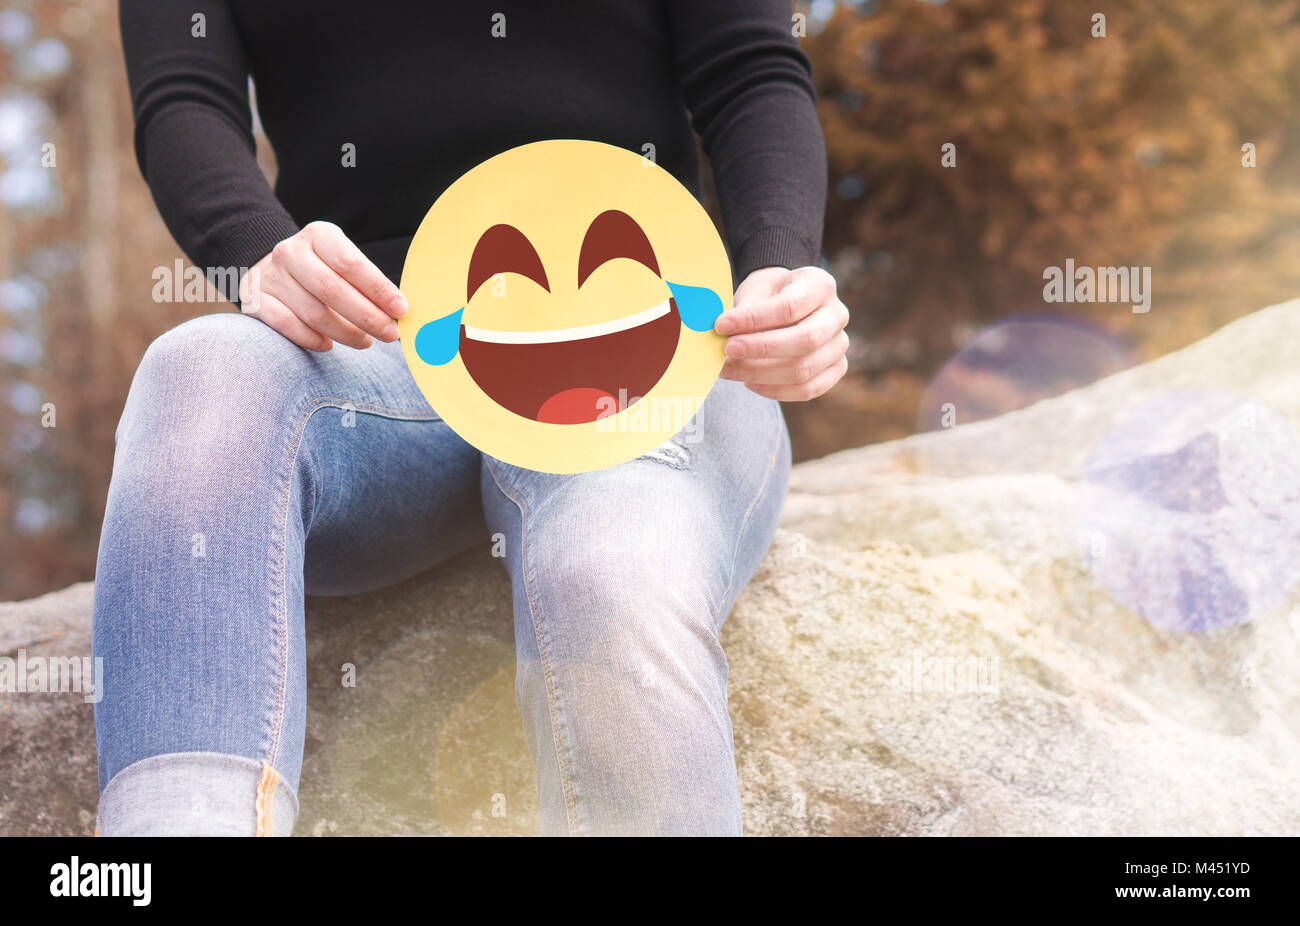 Lachend emoticon mit Tränen der Freude. Frau mit Spaß außerhalb und halten einen fröhlichen bedrucktes Papier Smiley. Happy Kommunikation und Smiley. Stockfoto